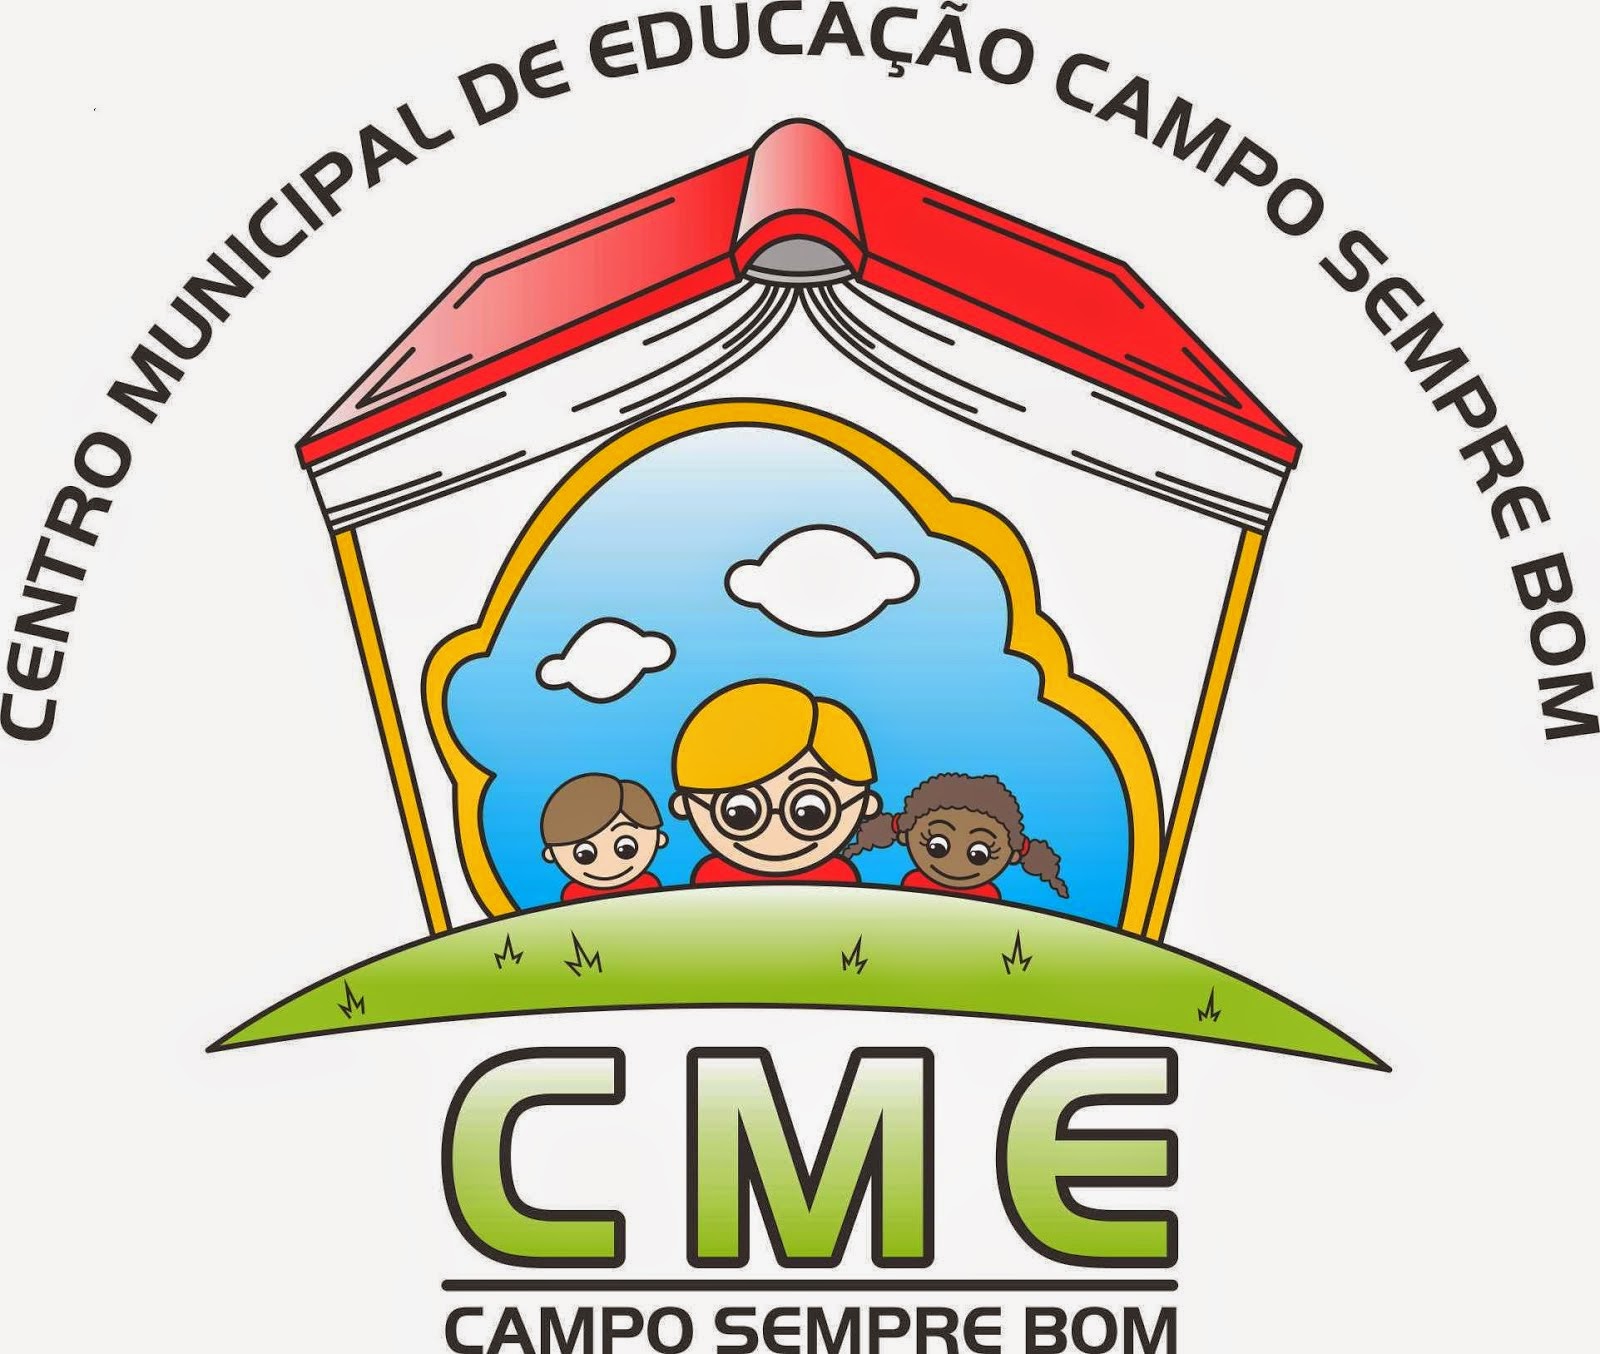 CENTRO MUNICIPAL DE EDUCAÇÃO - CAMPO SEMPRE BOM